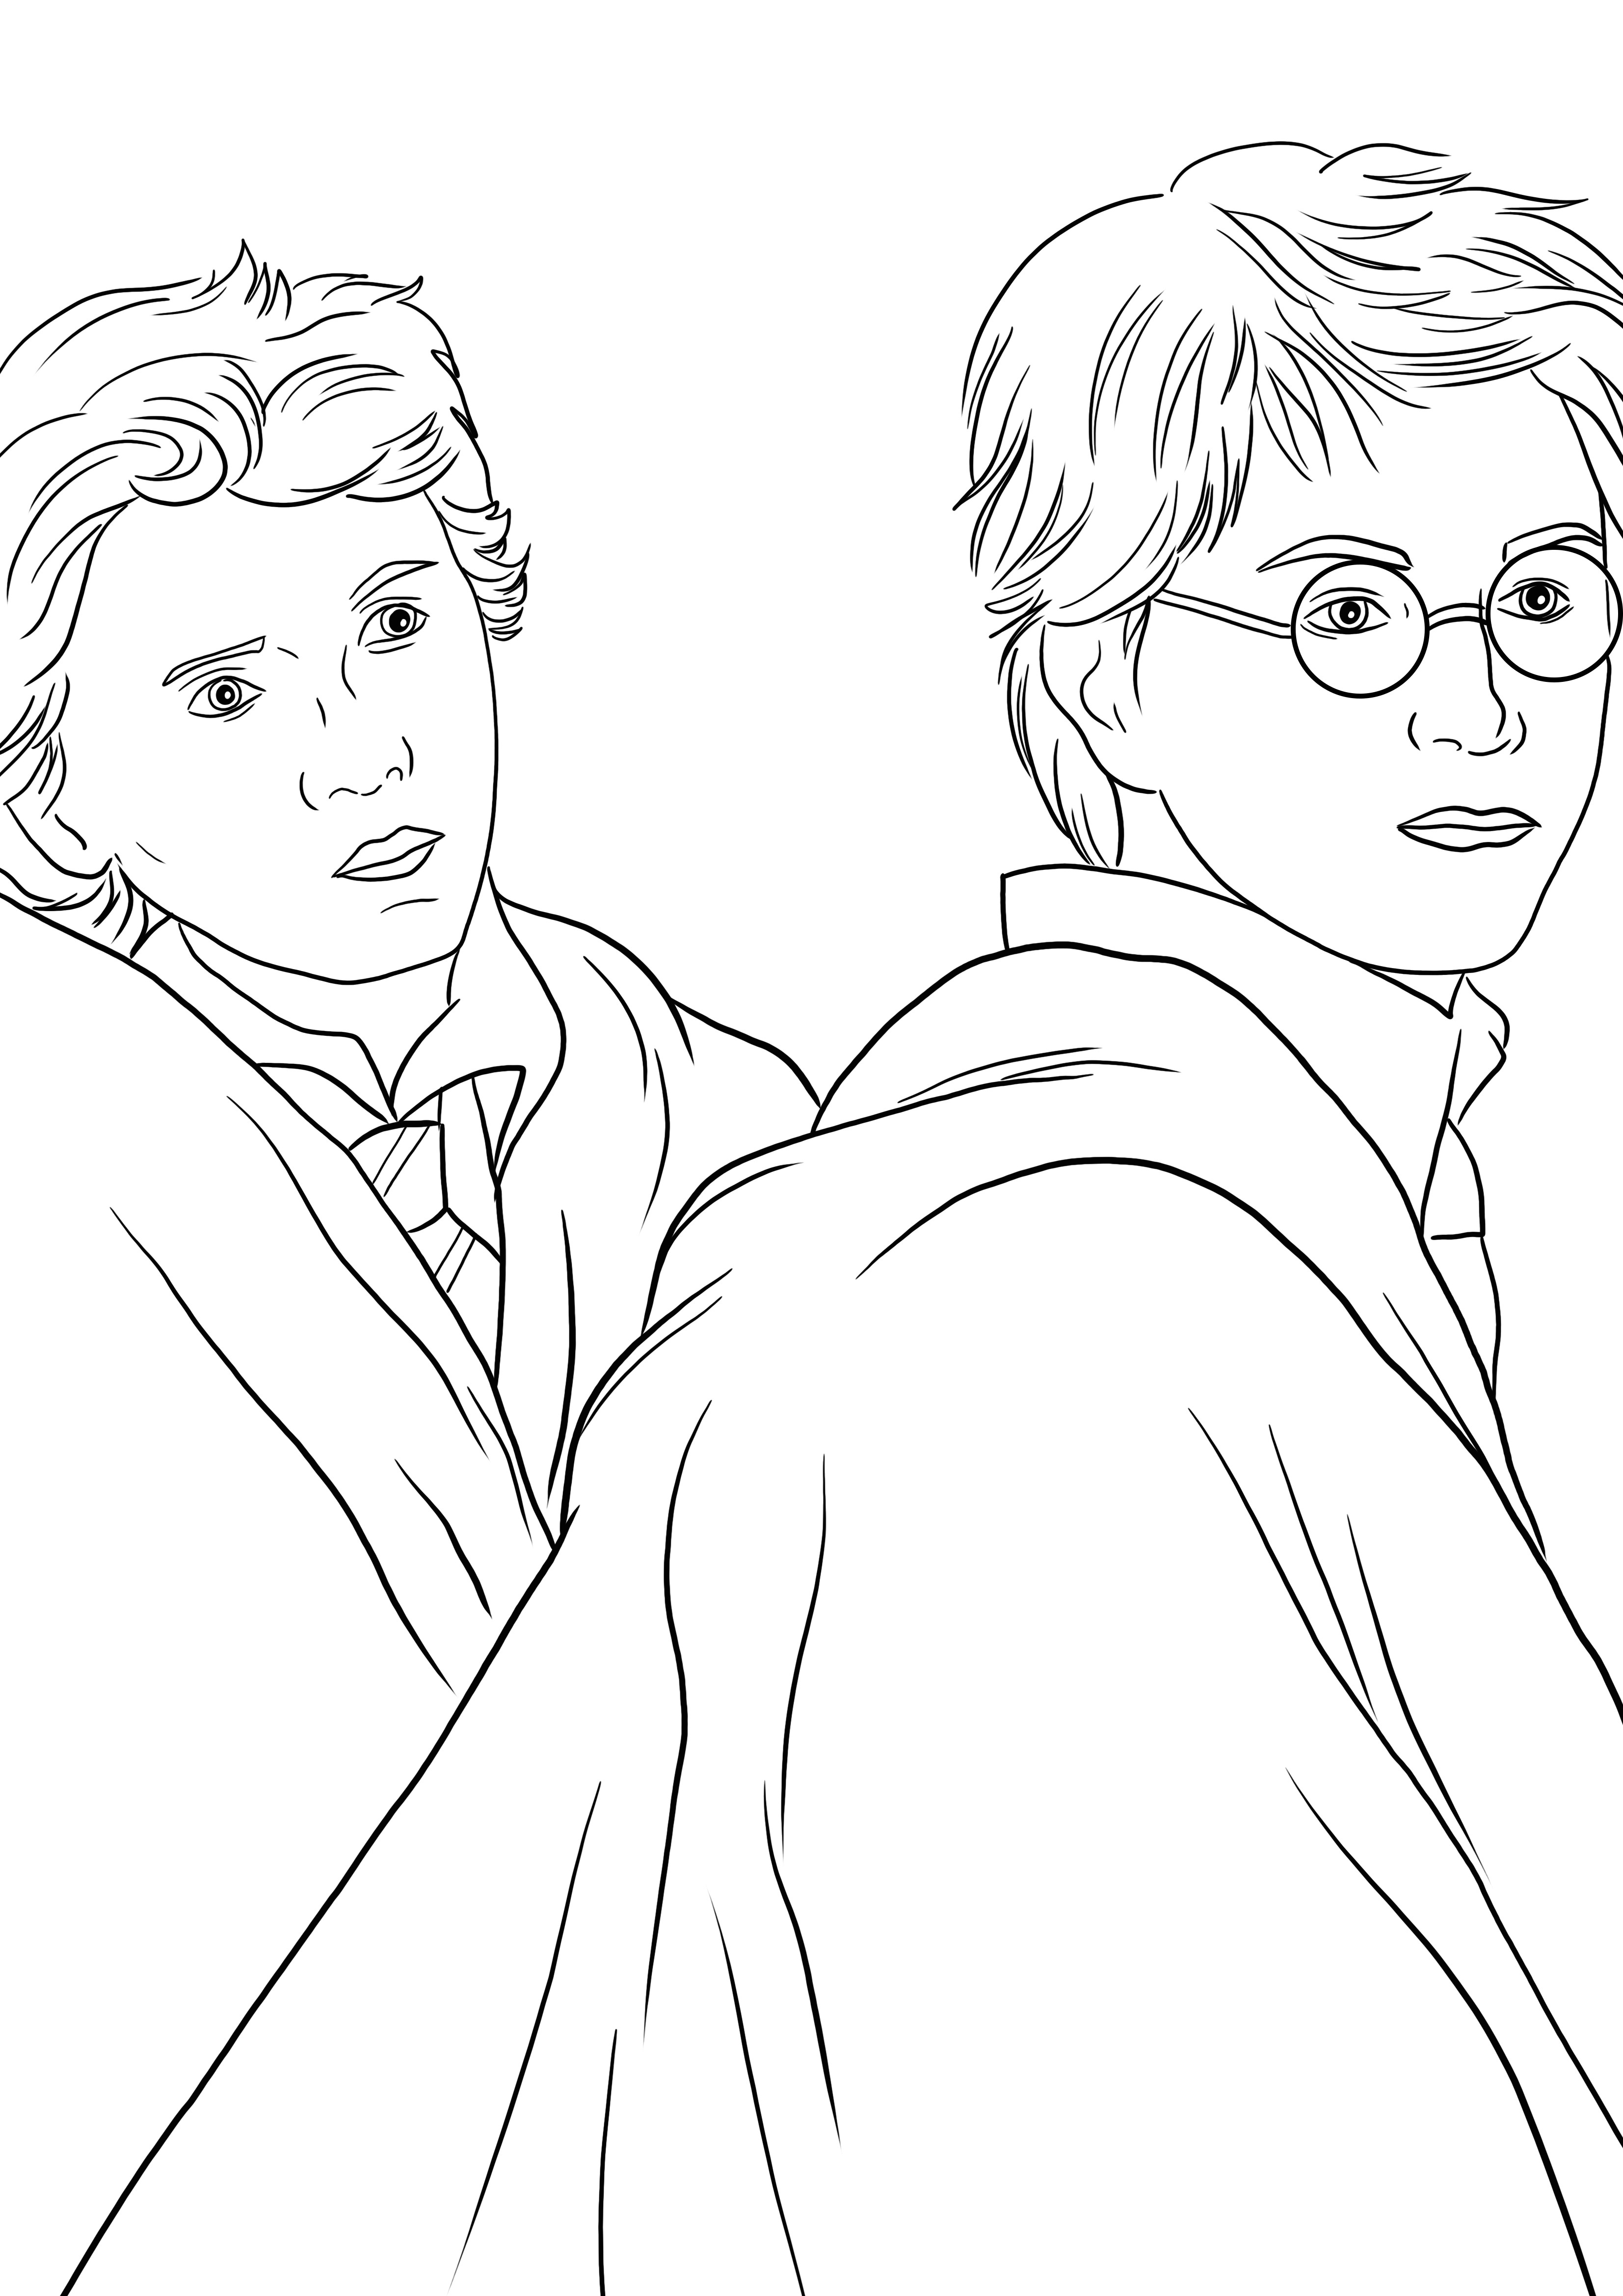 Pagina da colorare di Harry e Weasley da stampare o scaricare per far colorare i bambini